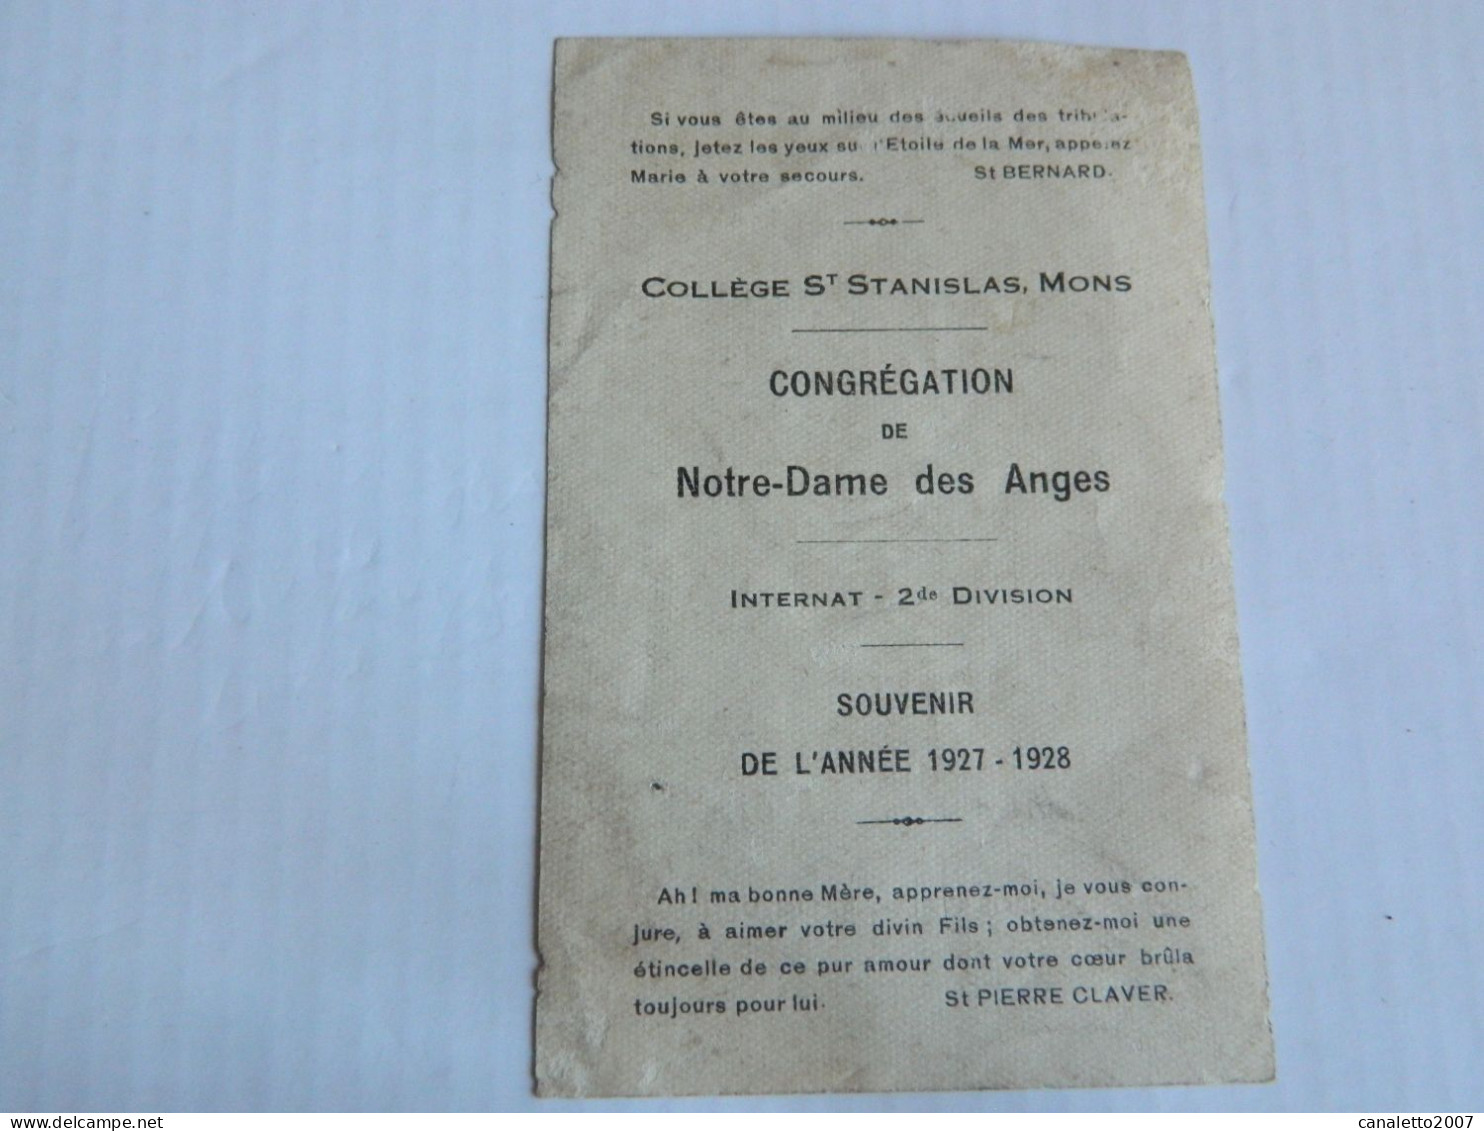 MONS: COLLEGE ST STANISLAS CONGREGATION DE N-D DES ANGES INTERNAT 2 ME DIVISION SOUVENIR DE L'ANNEE 1927/1928 - Andachtsbilder